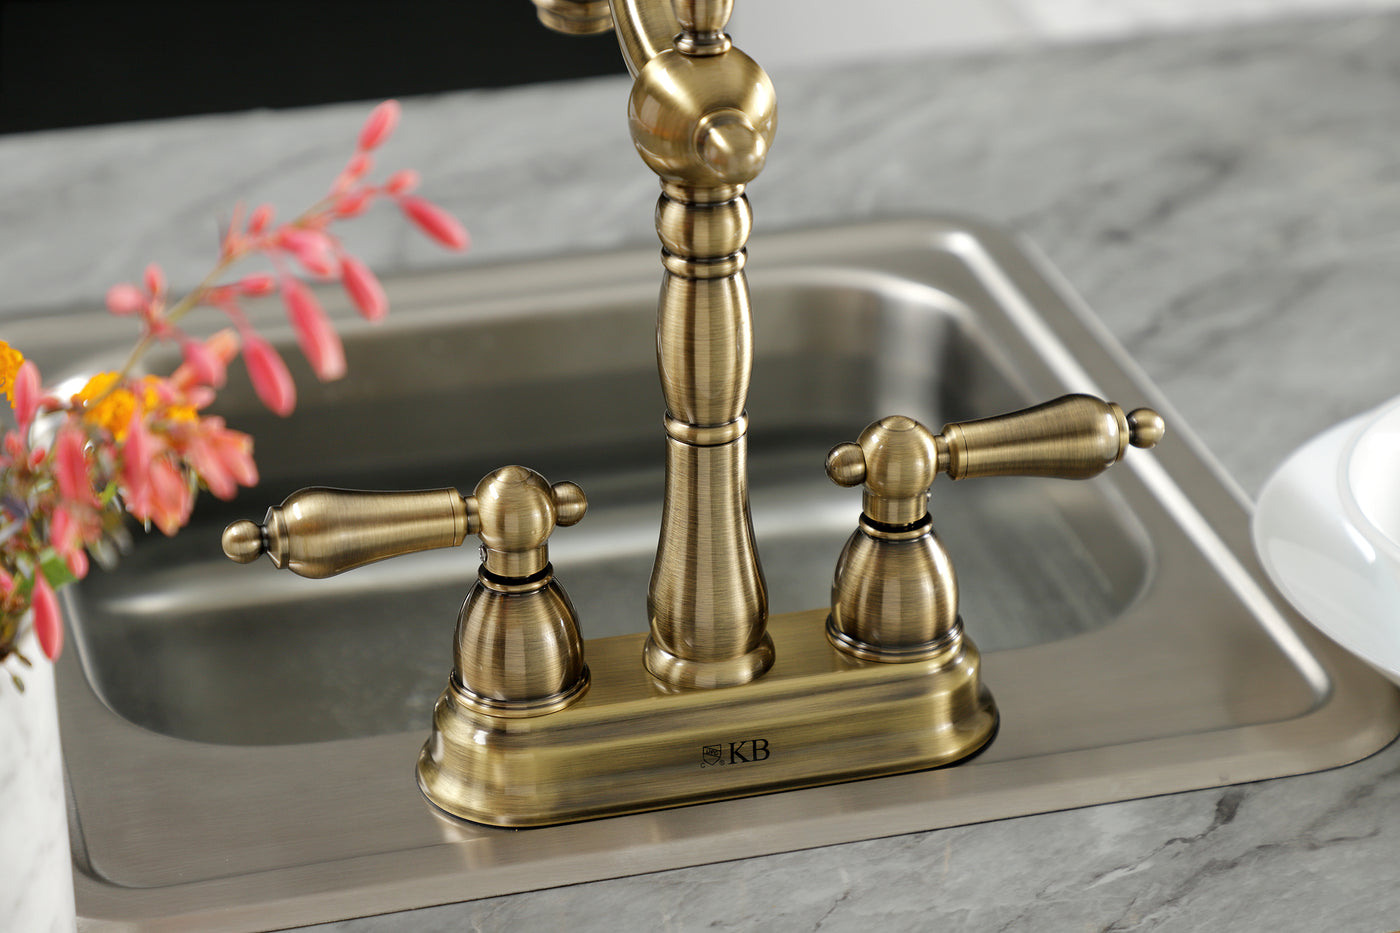 Elements of Design EB1493AL 4-Inch Centerset Bar Faucet, Antique Brass